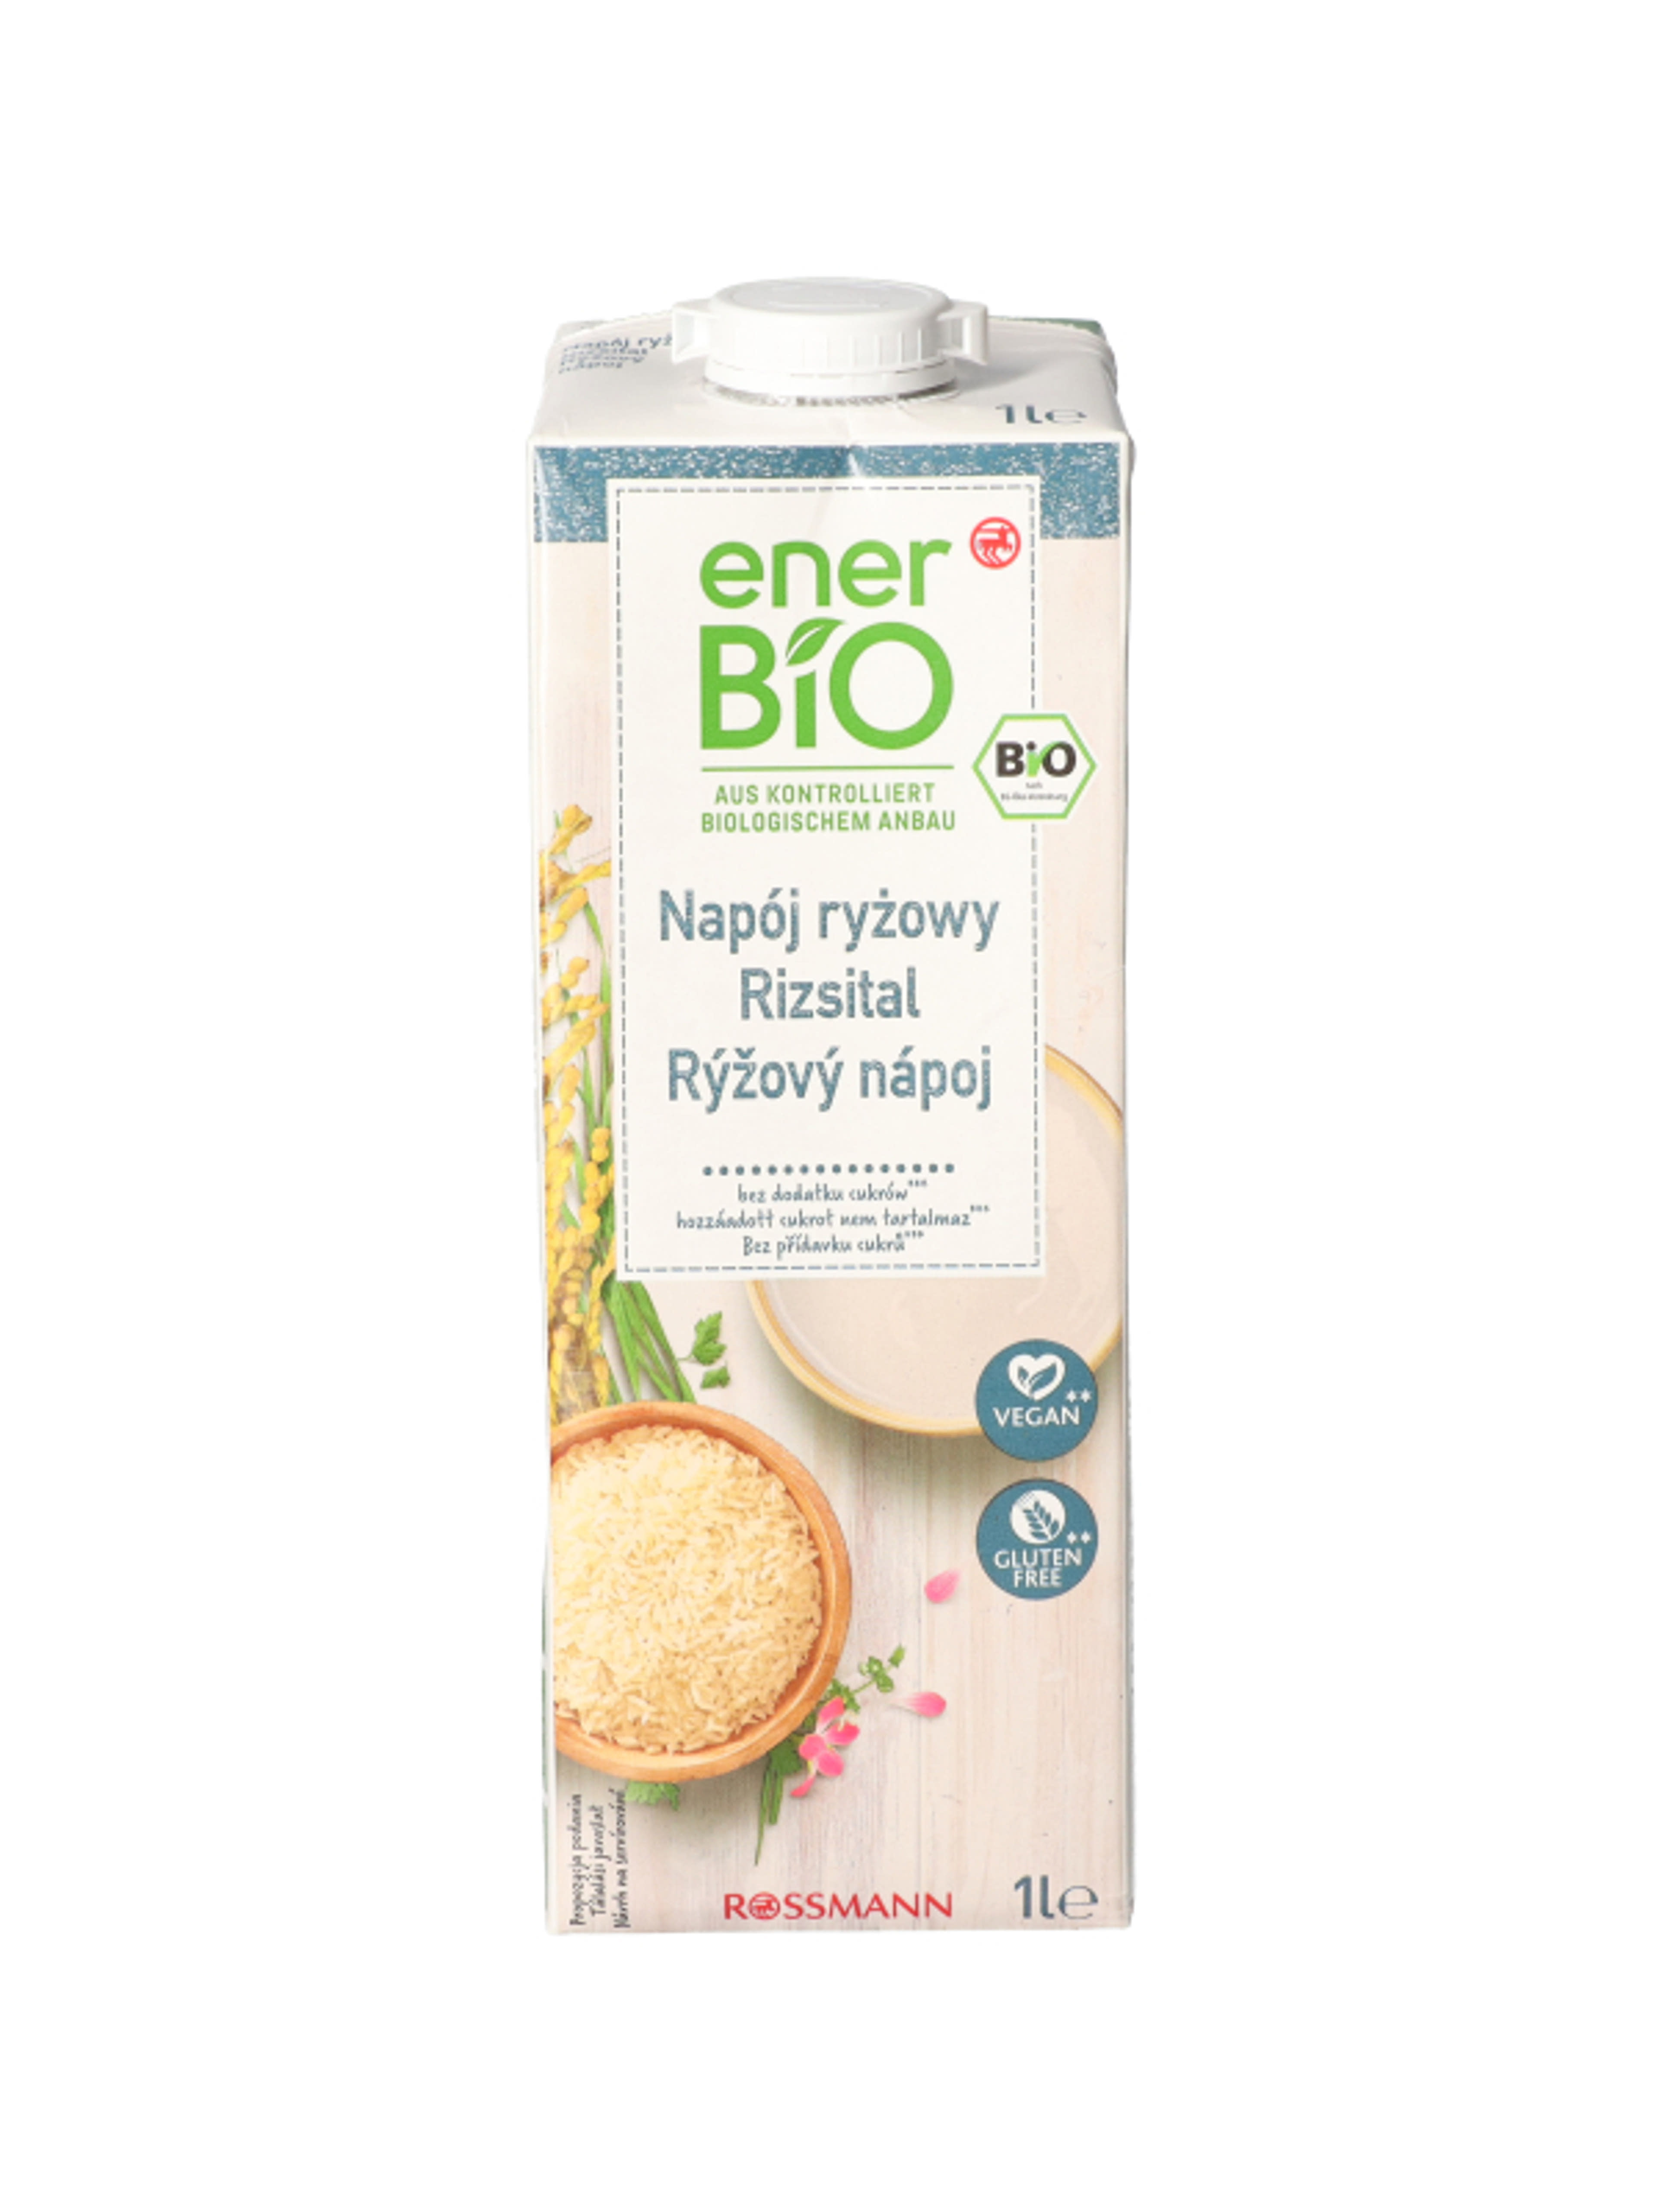 enerBio natúr rizsital - 1 l
hozzáadott cukrot nem tartalmaz
vegán és gluténmentes